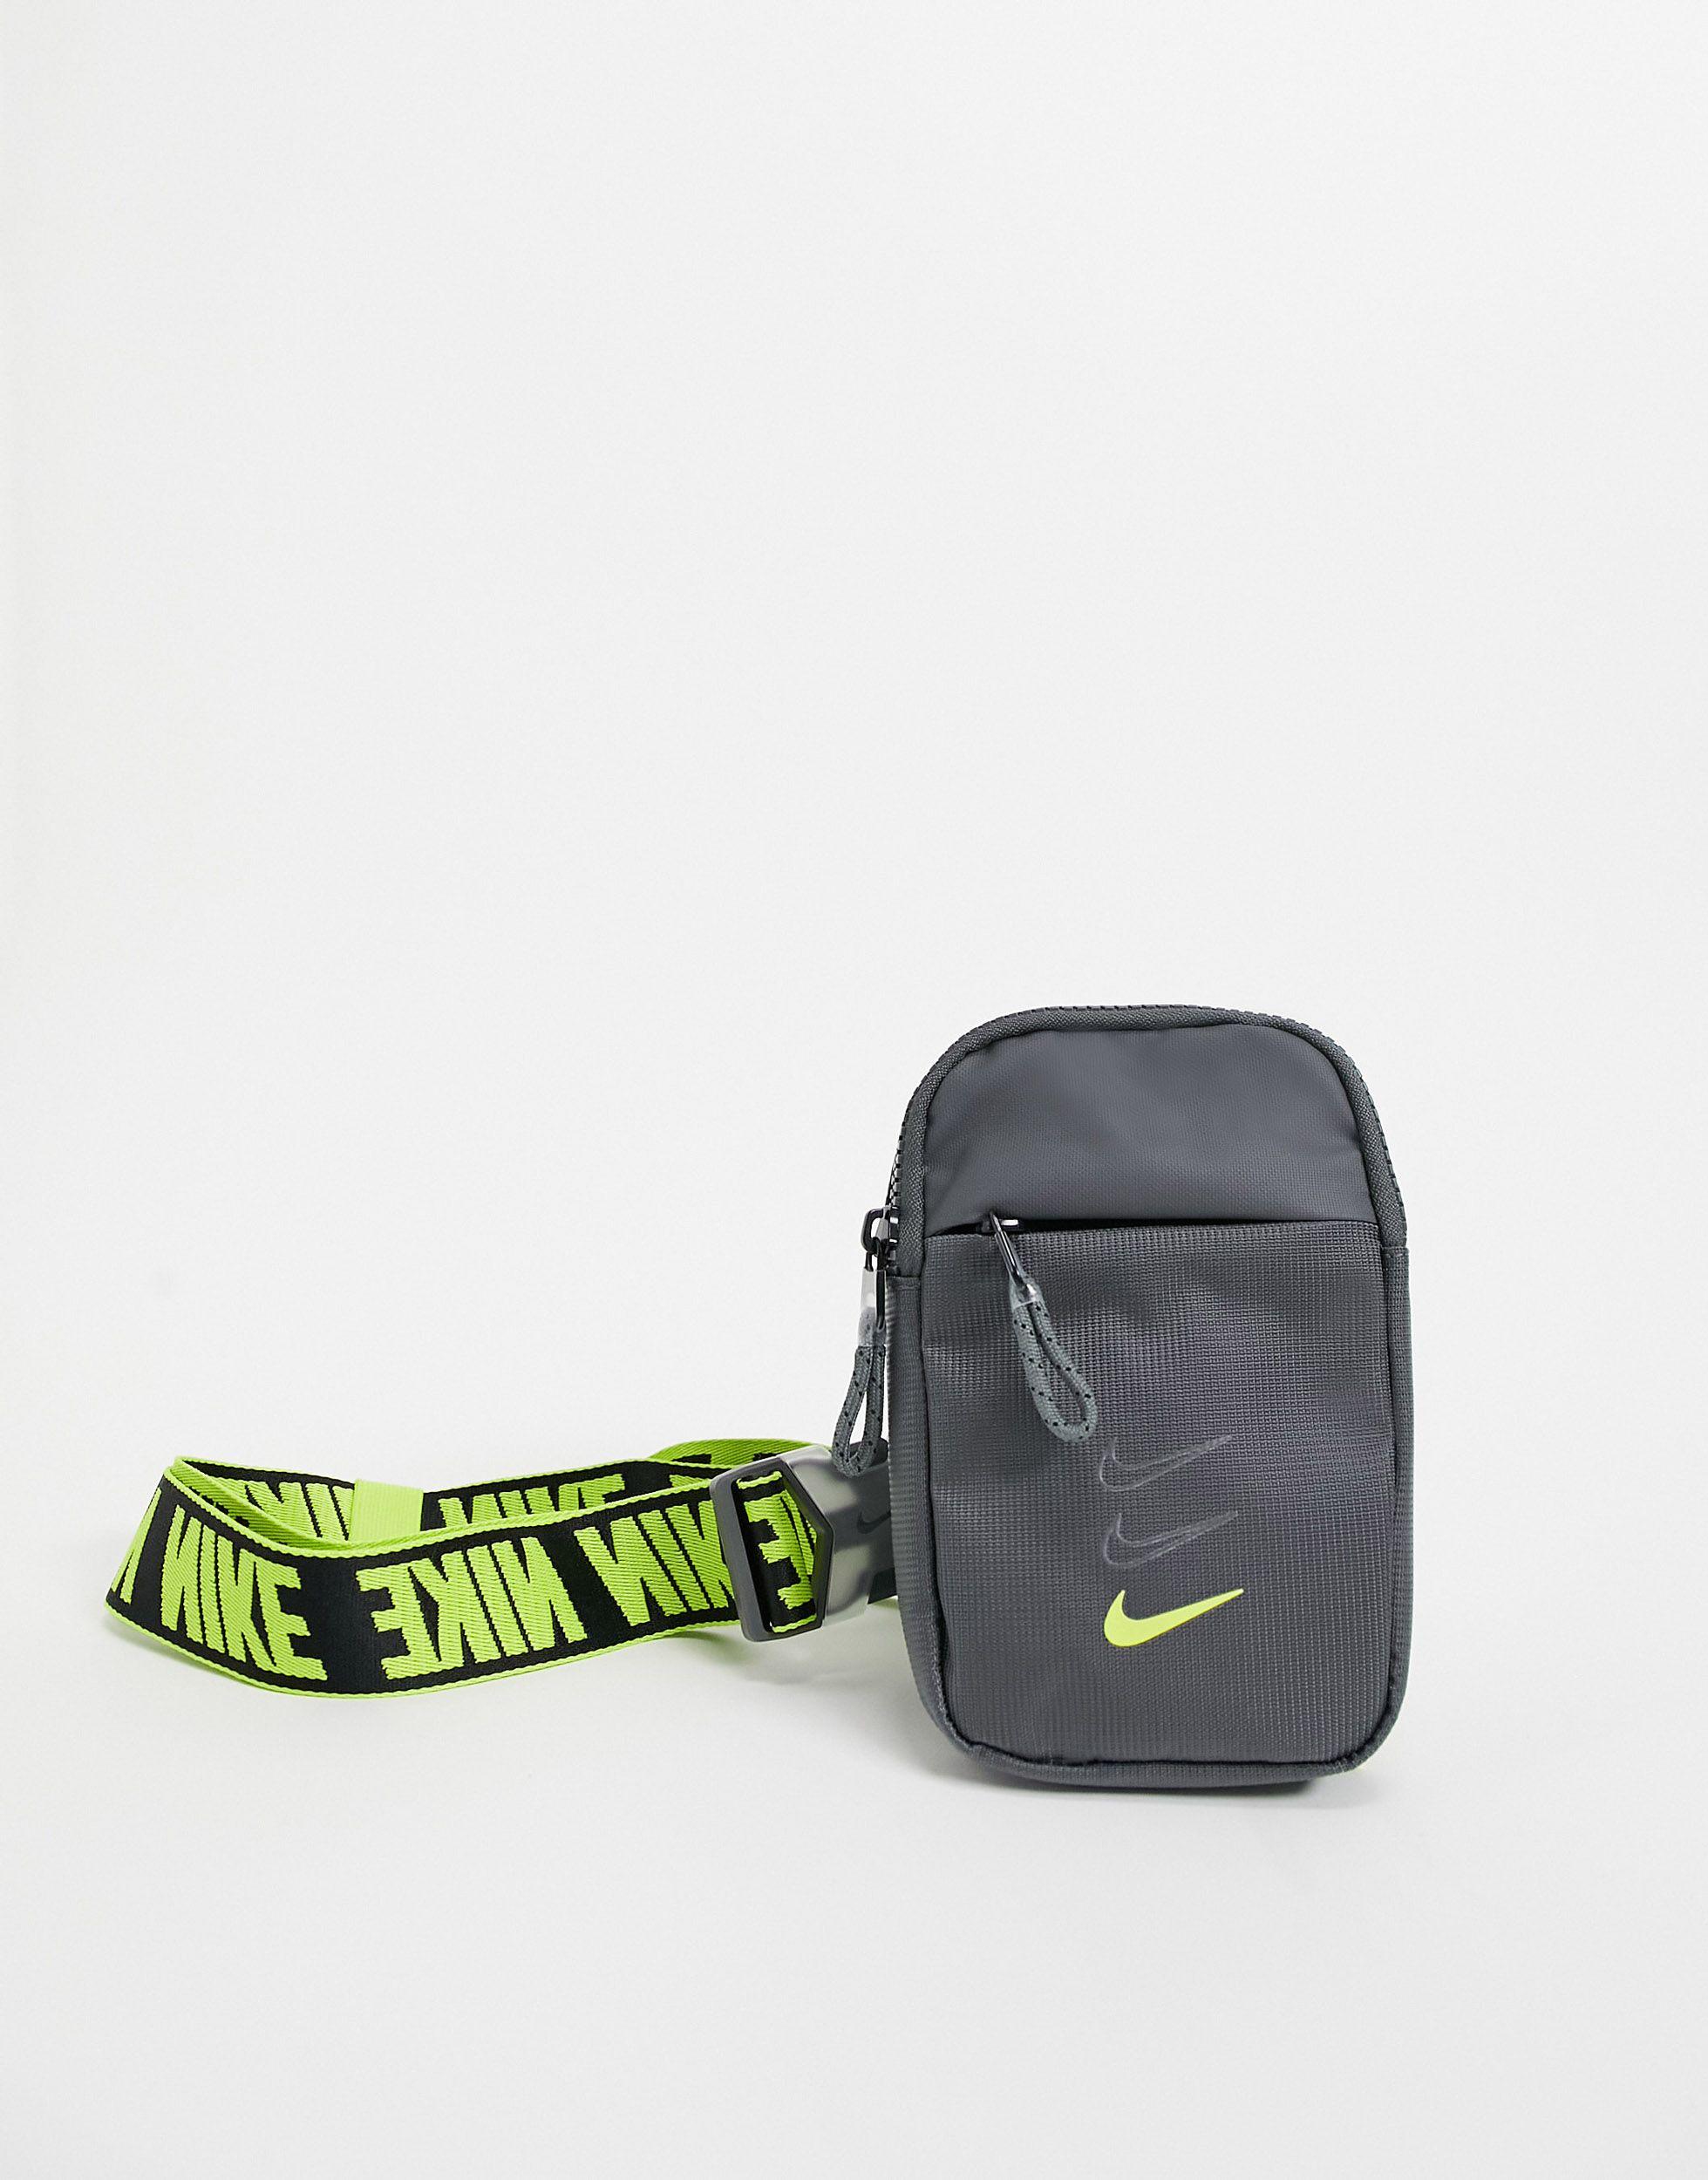 Bandolera amarilla neón con Nike de color | Lyst